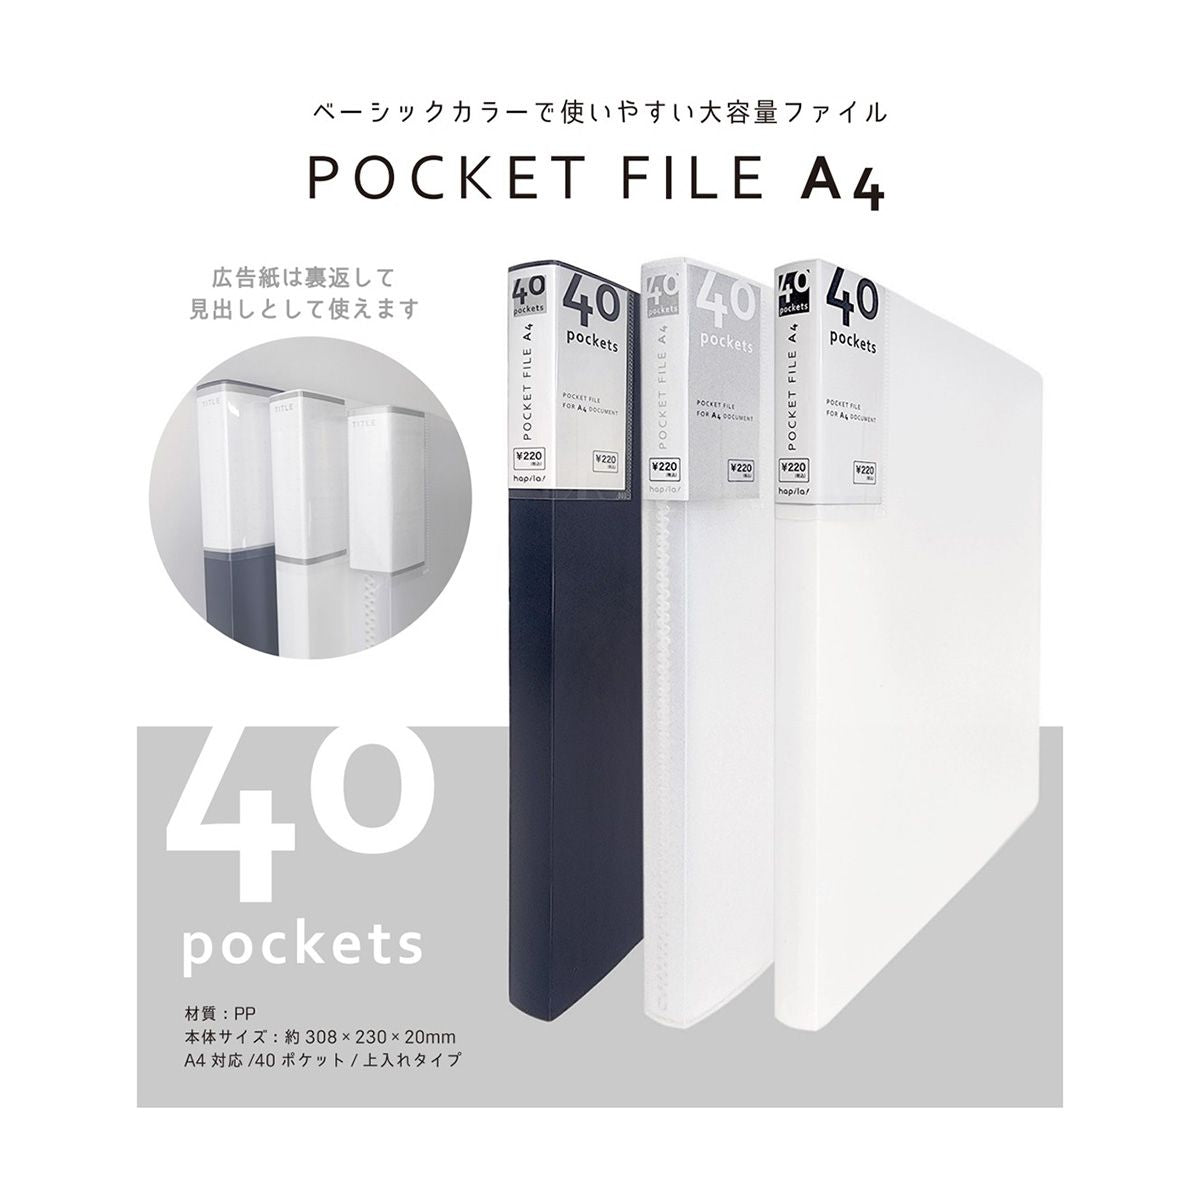 ポケットファイル クリアーファイル A4 40P ホワイト/CF40A4WH 340587